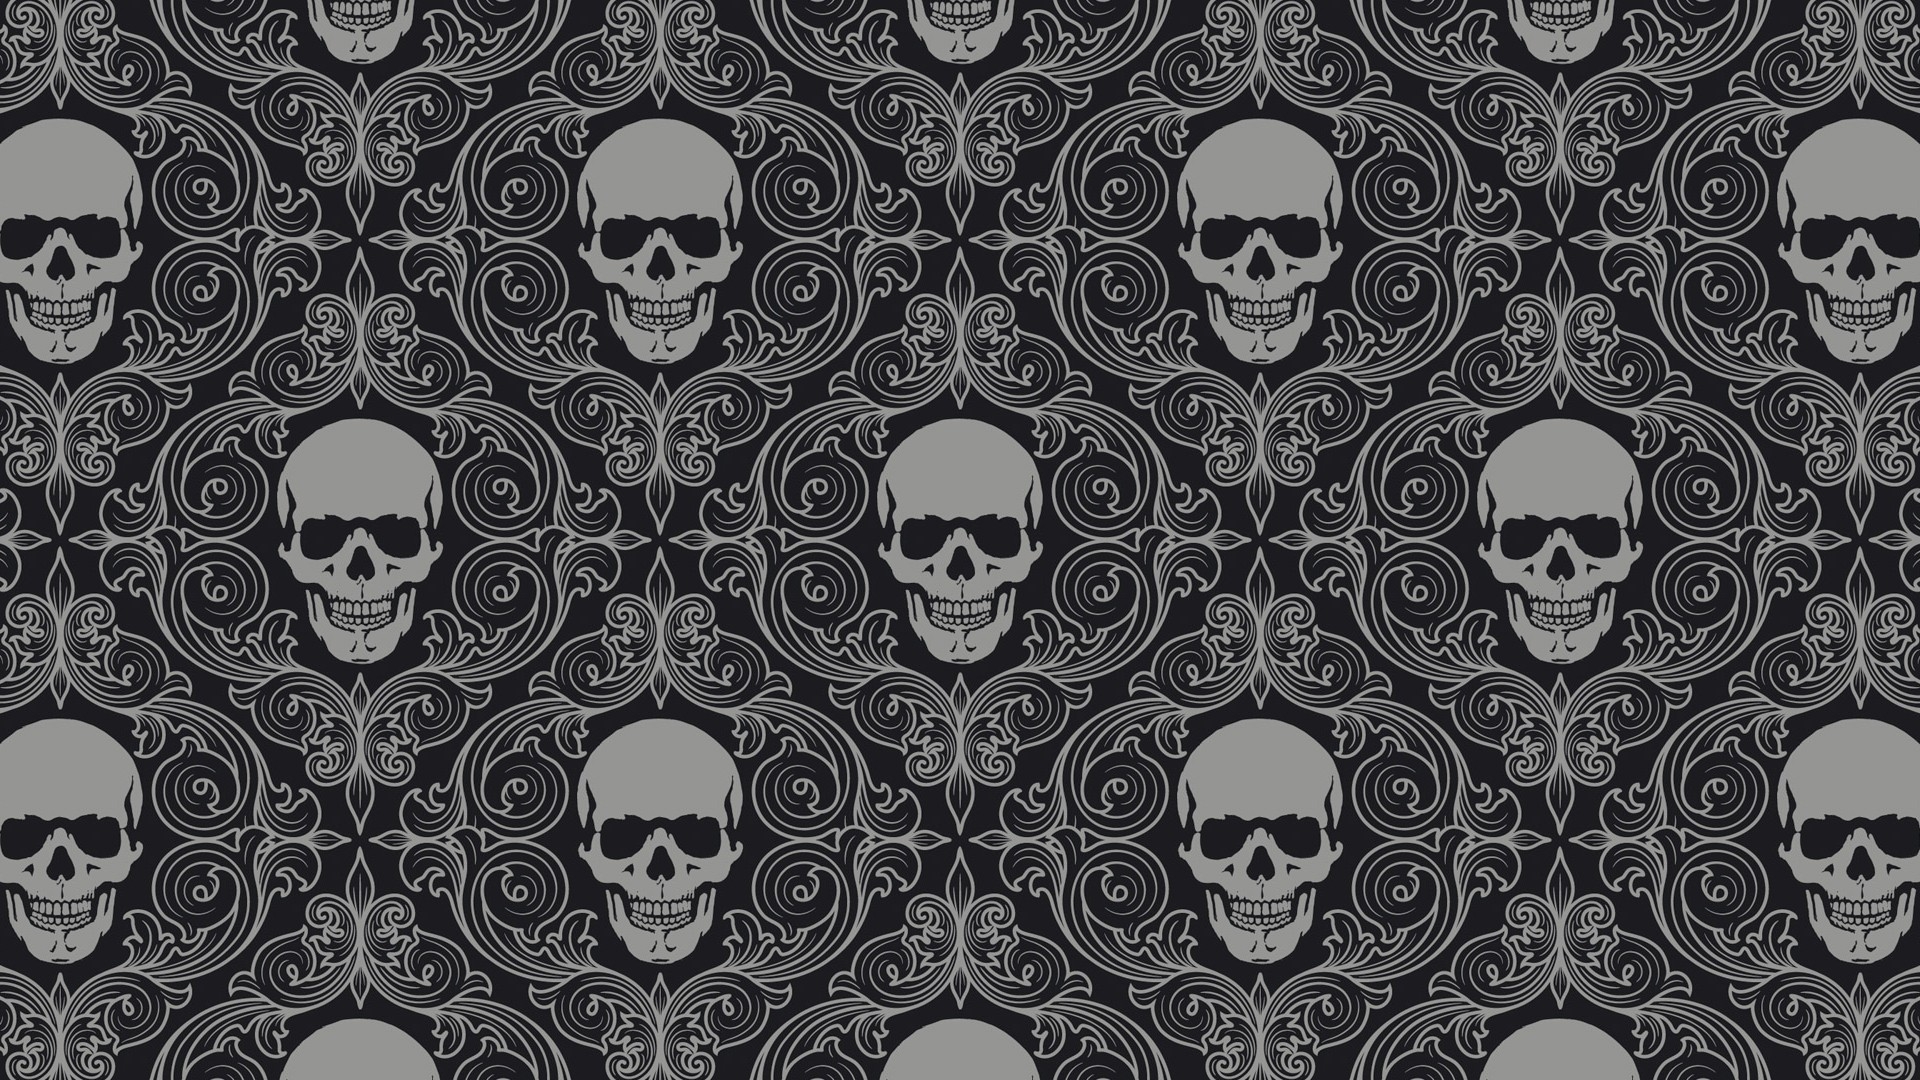 Wallpaper Skull tiles background pattern